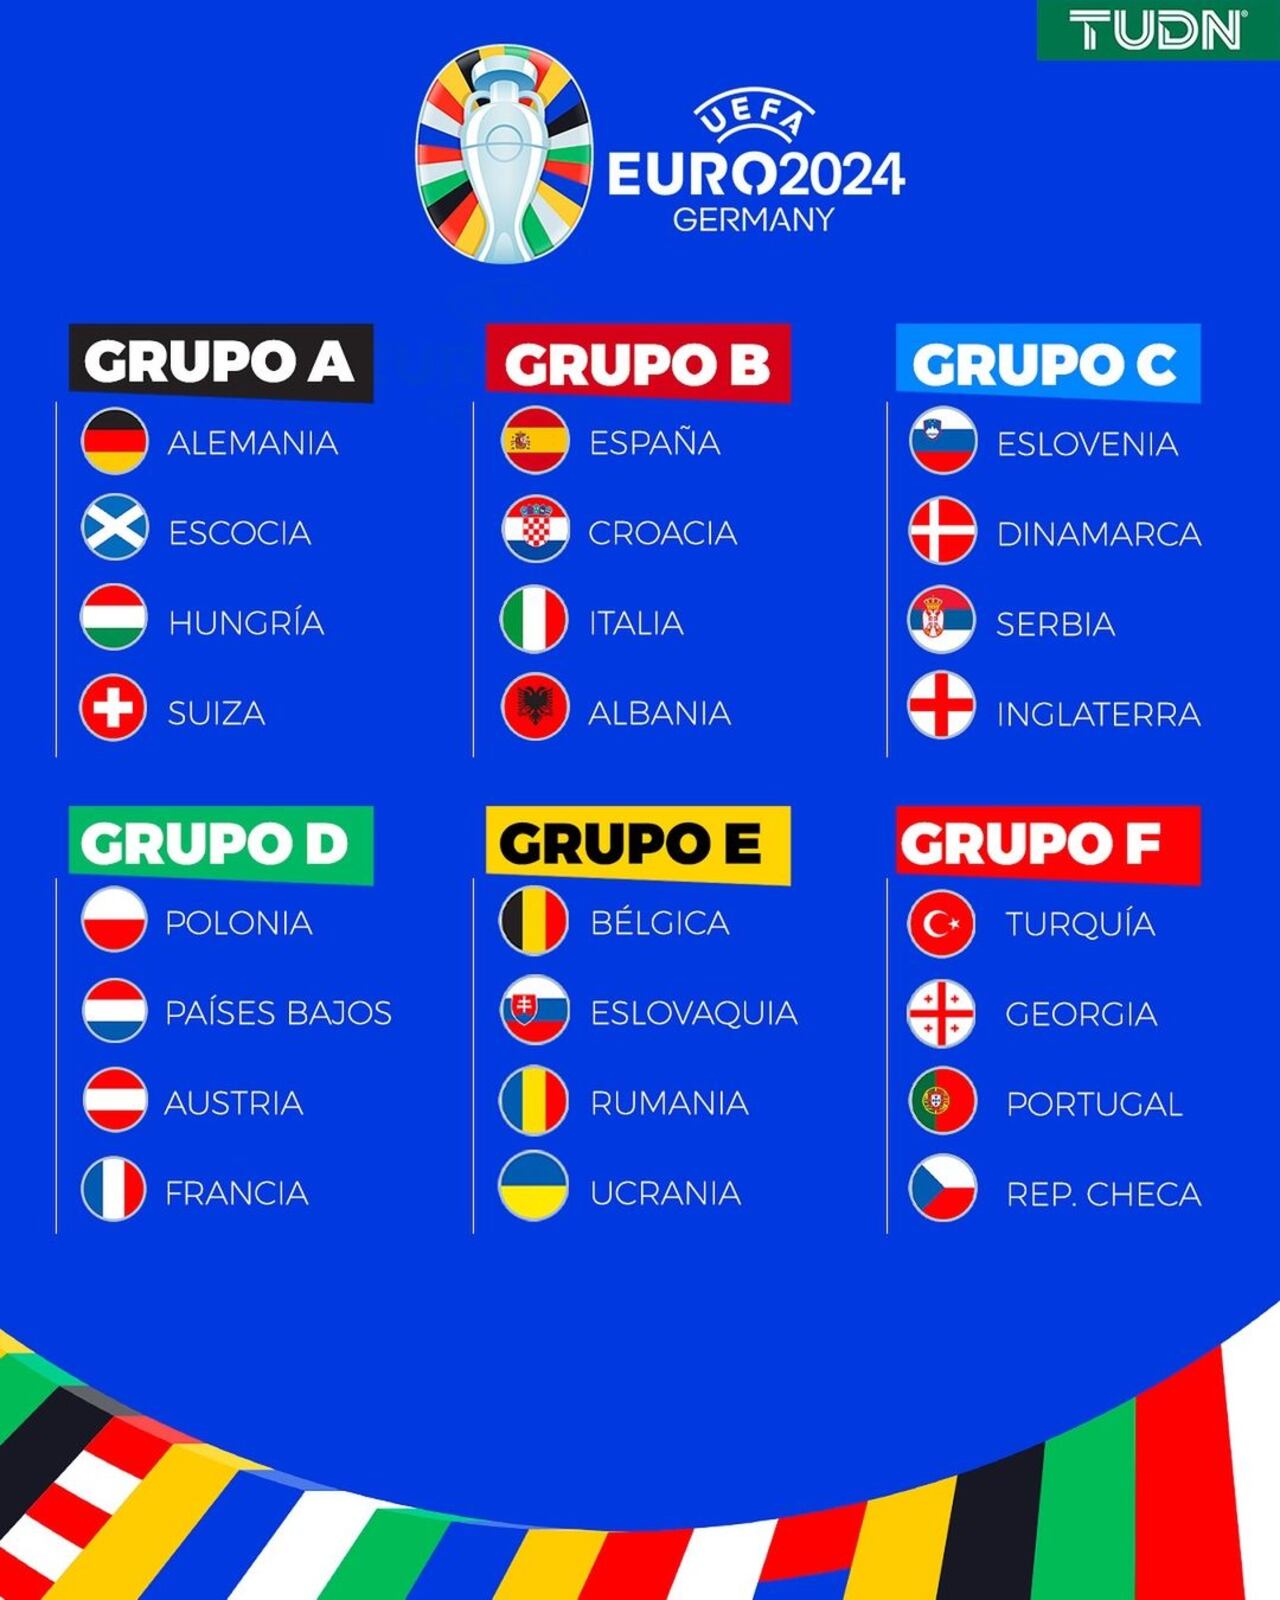 Así está dividida la fase de grupos en la Eurocopa 2024.